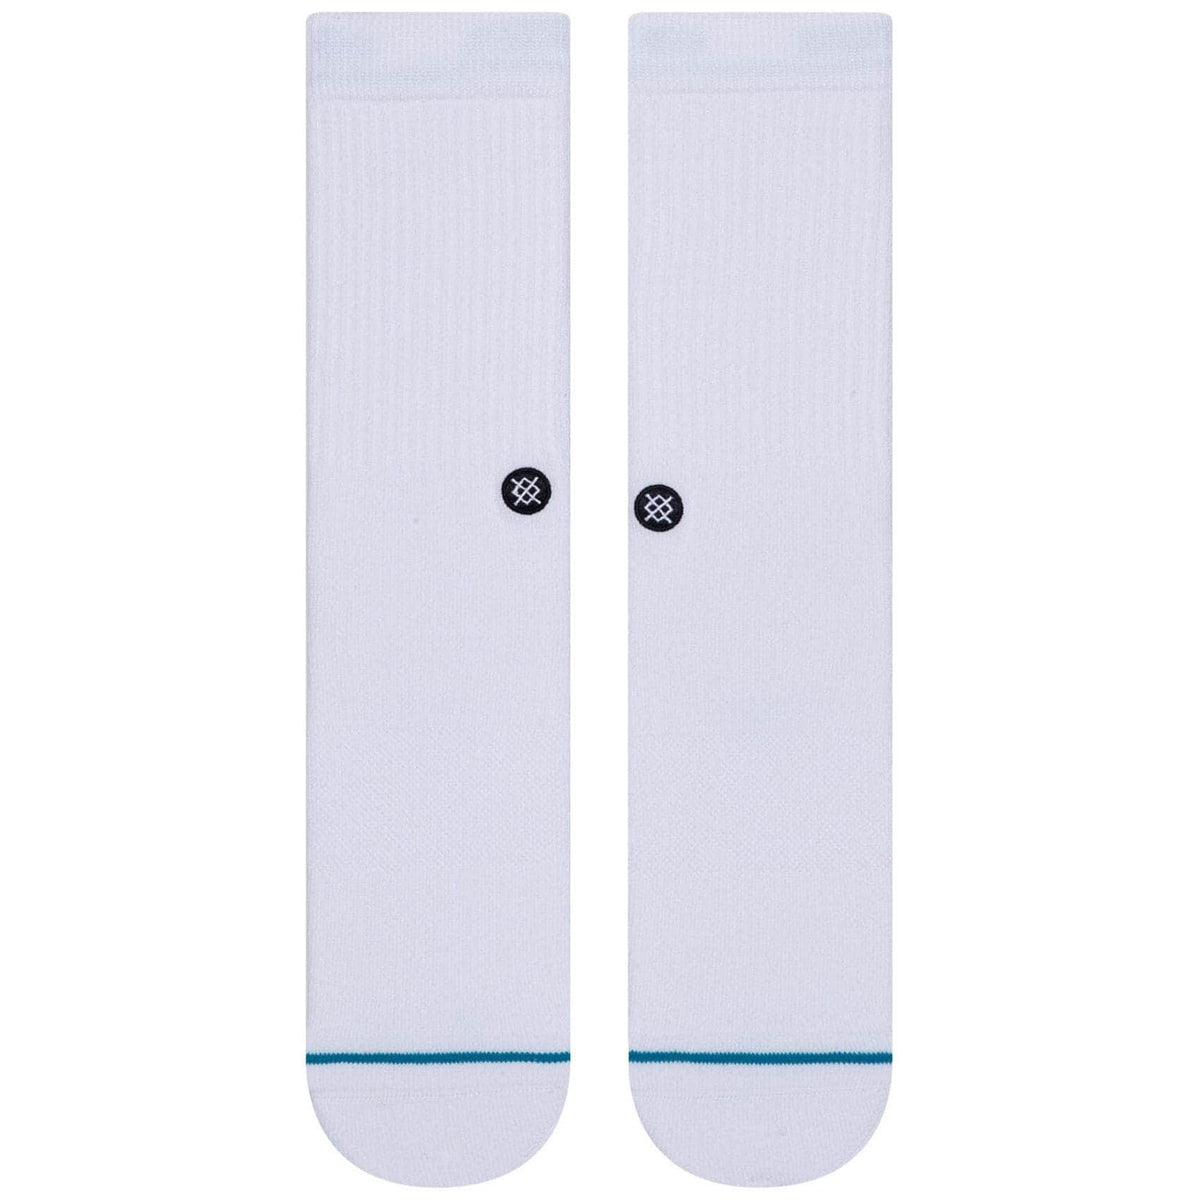 Stance Icon Socks - White/Black - Mens Crew Length Socks by Stance